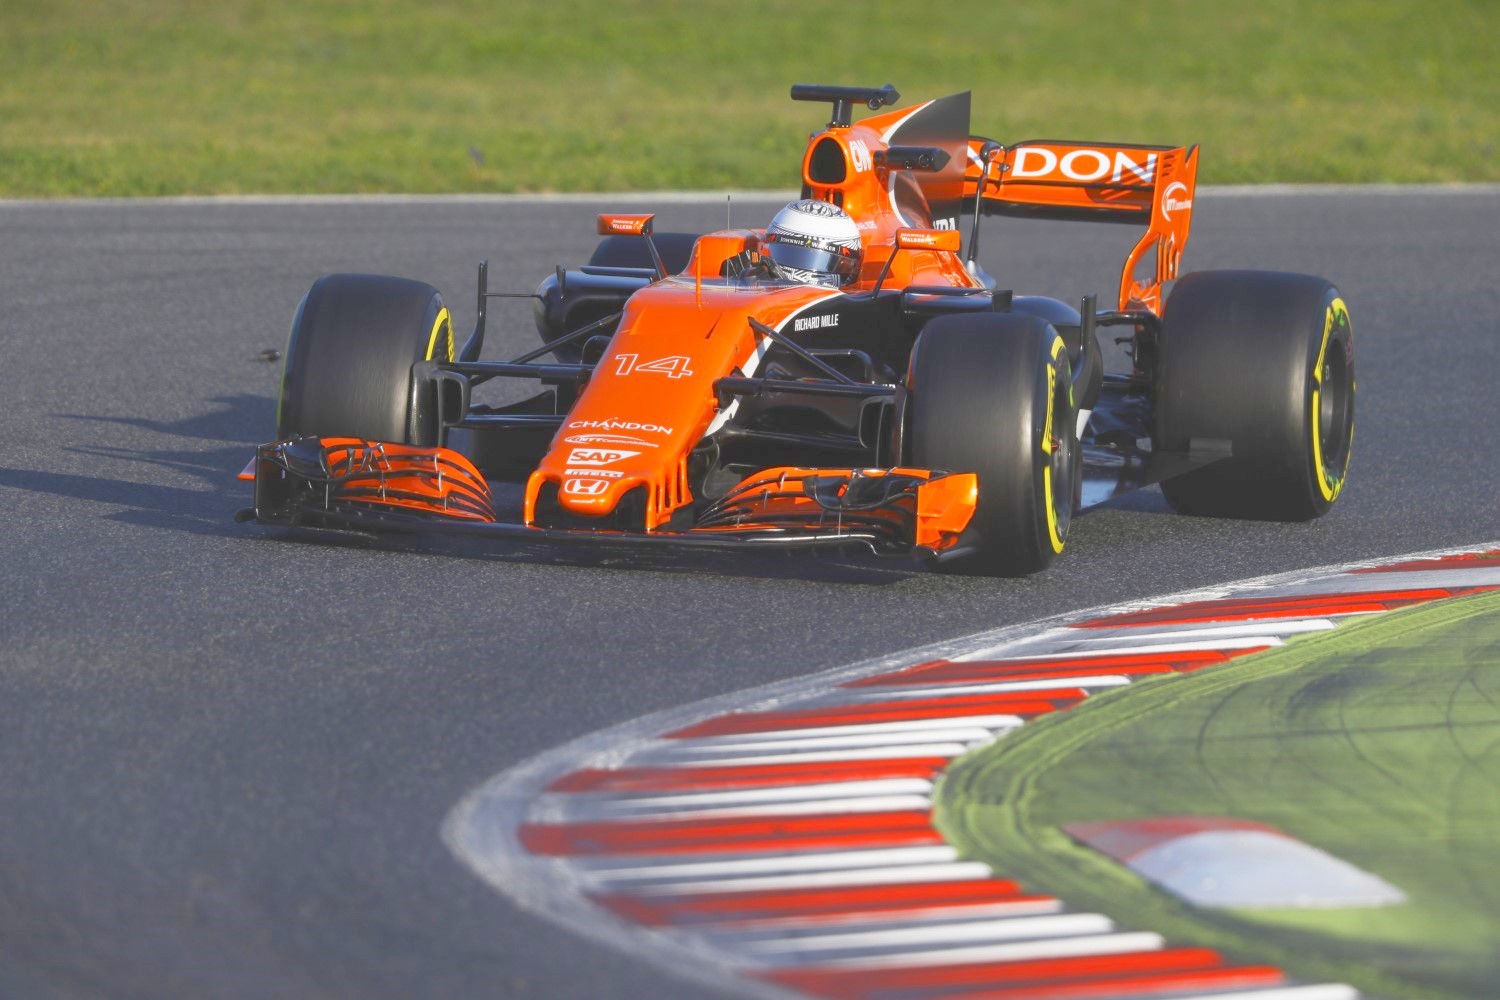 The McLaren Honda has had major reliability problems so far